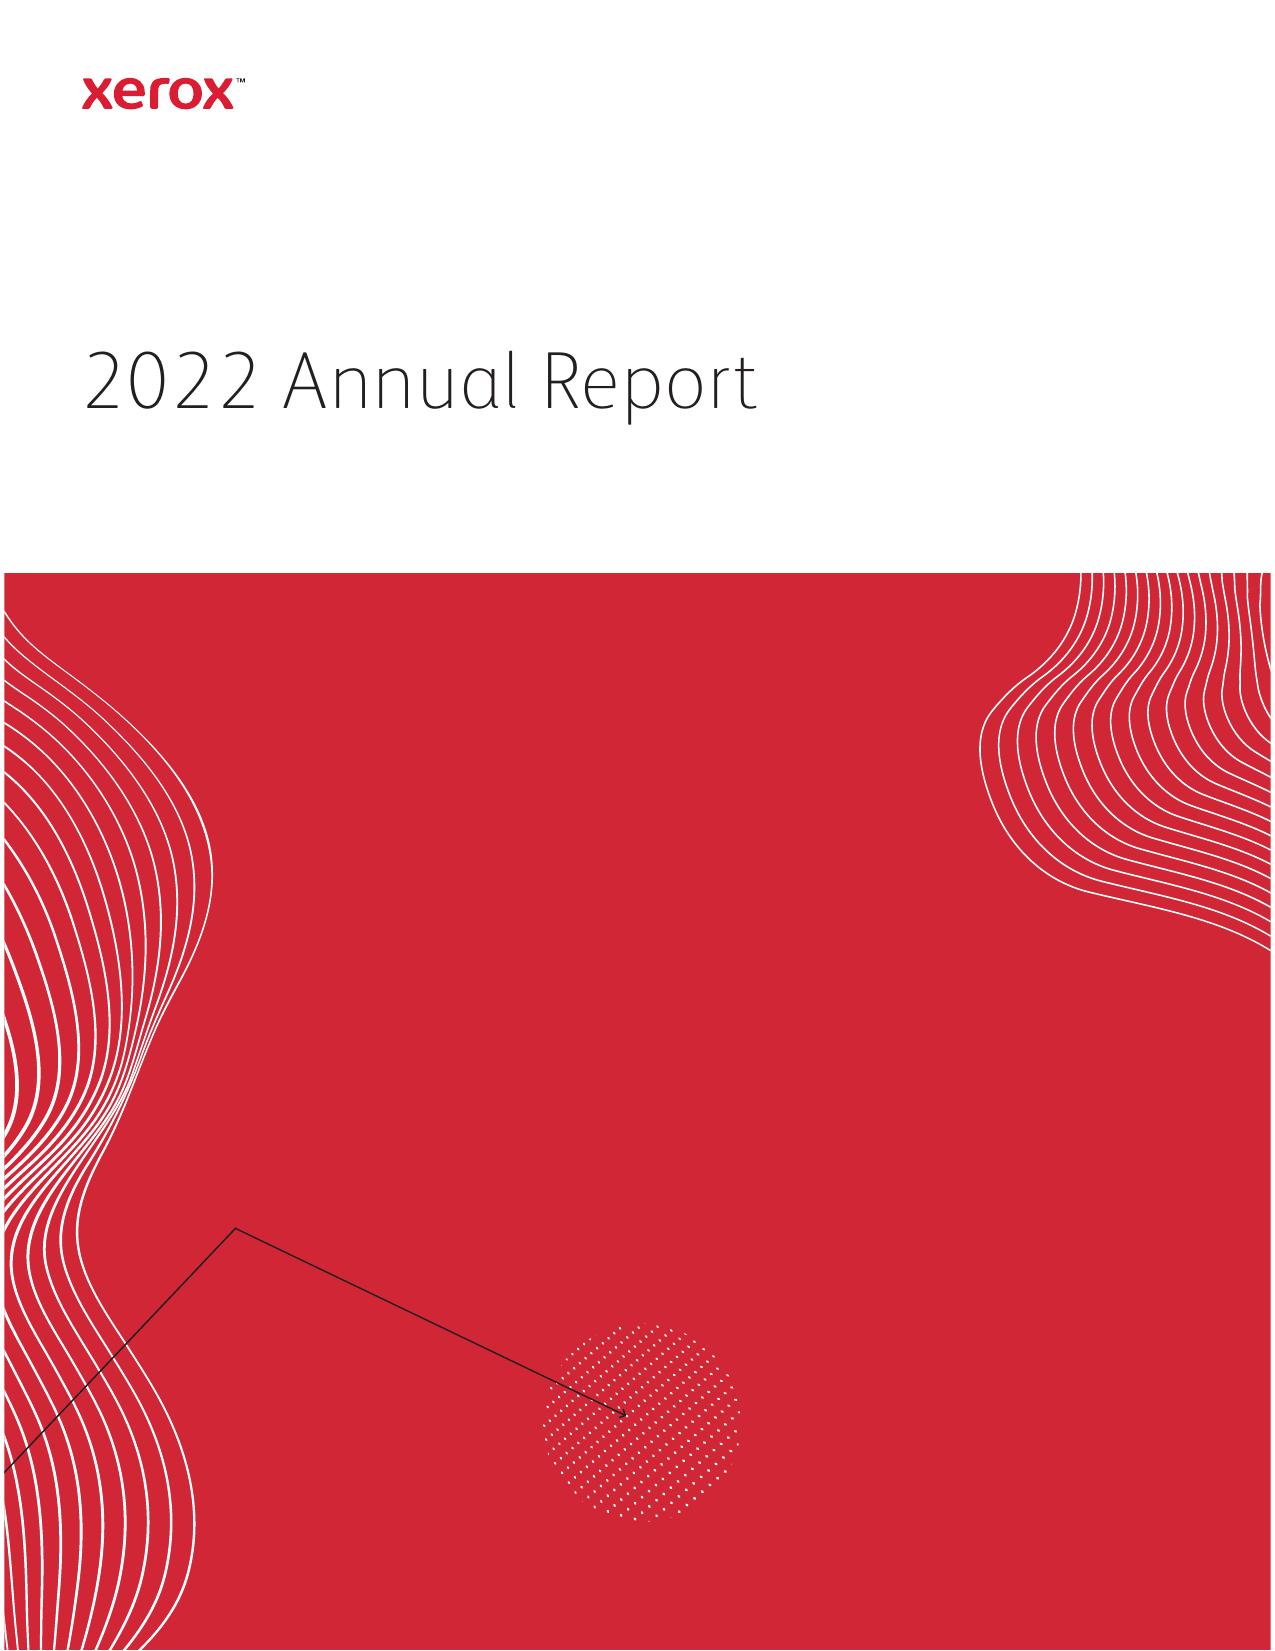 ARAMEDIA 2022 Annual Report